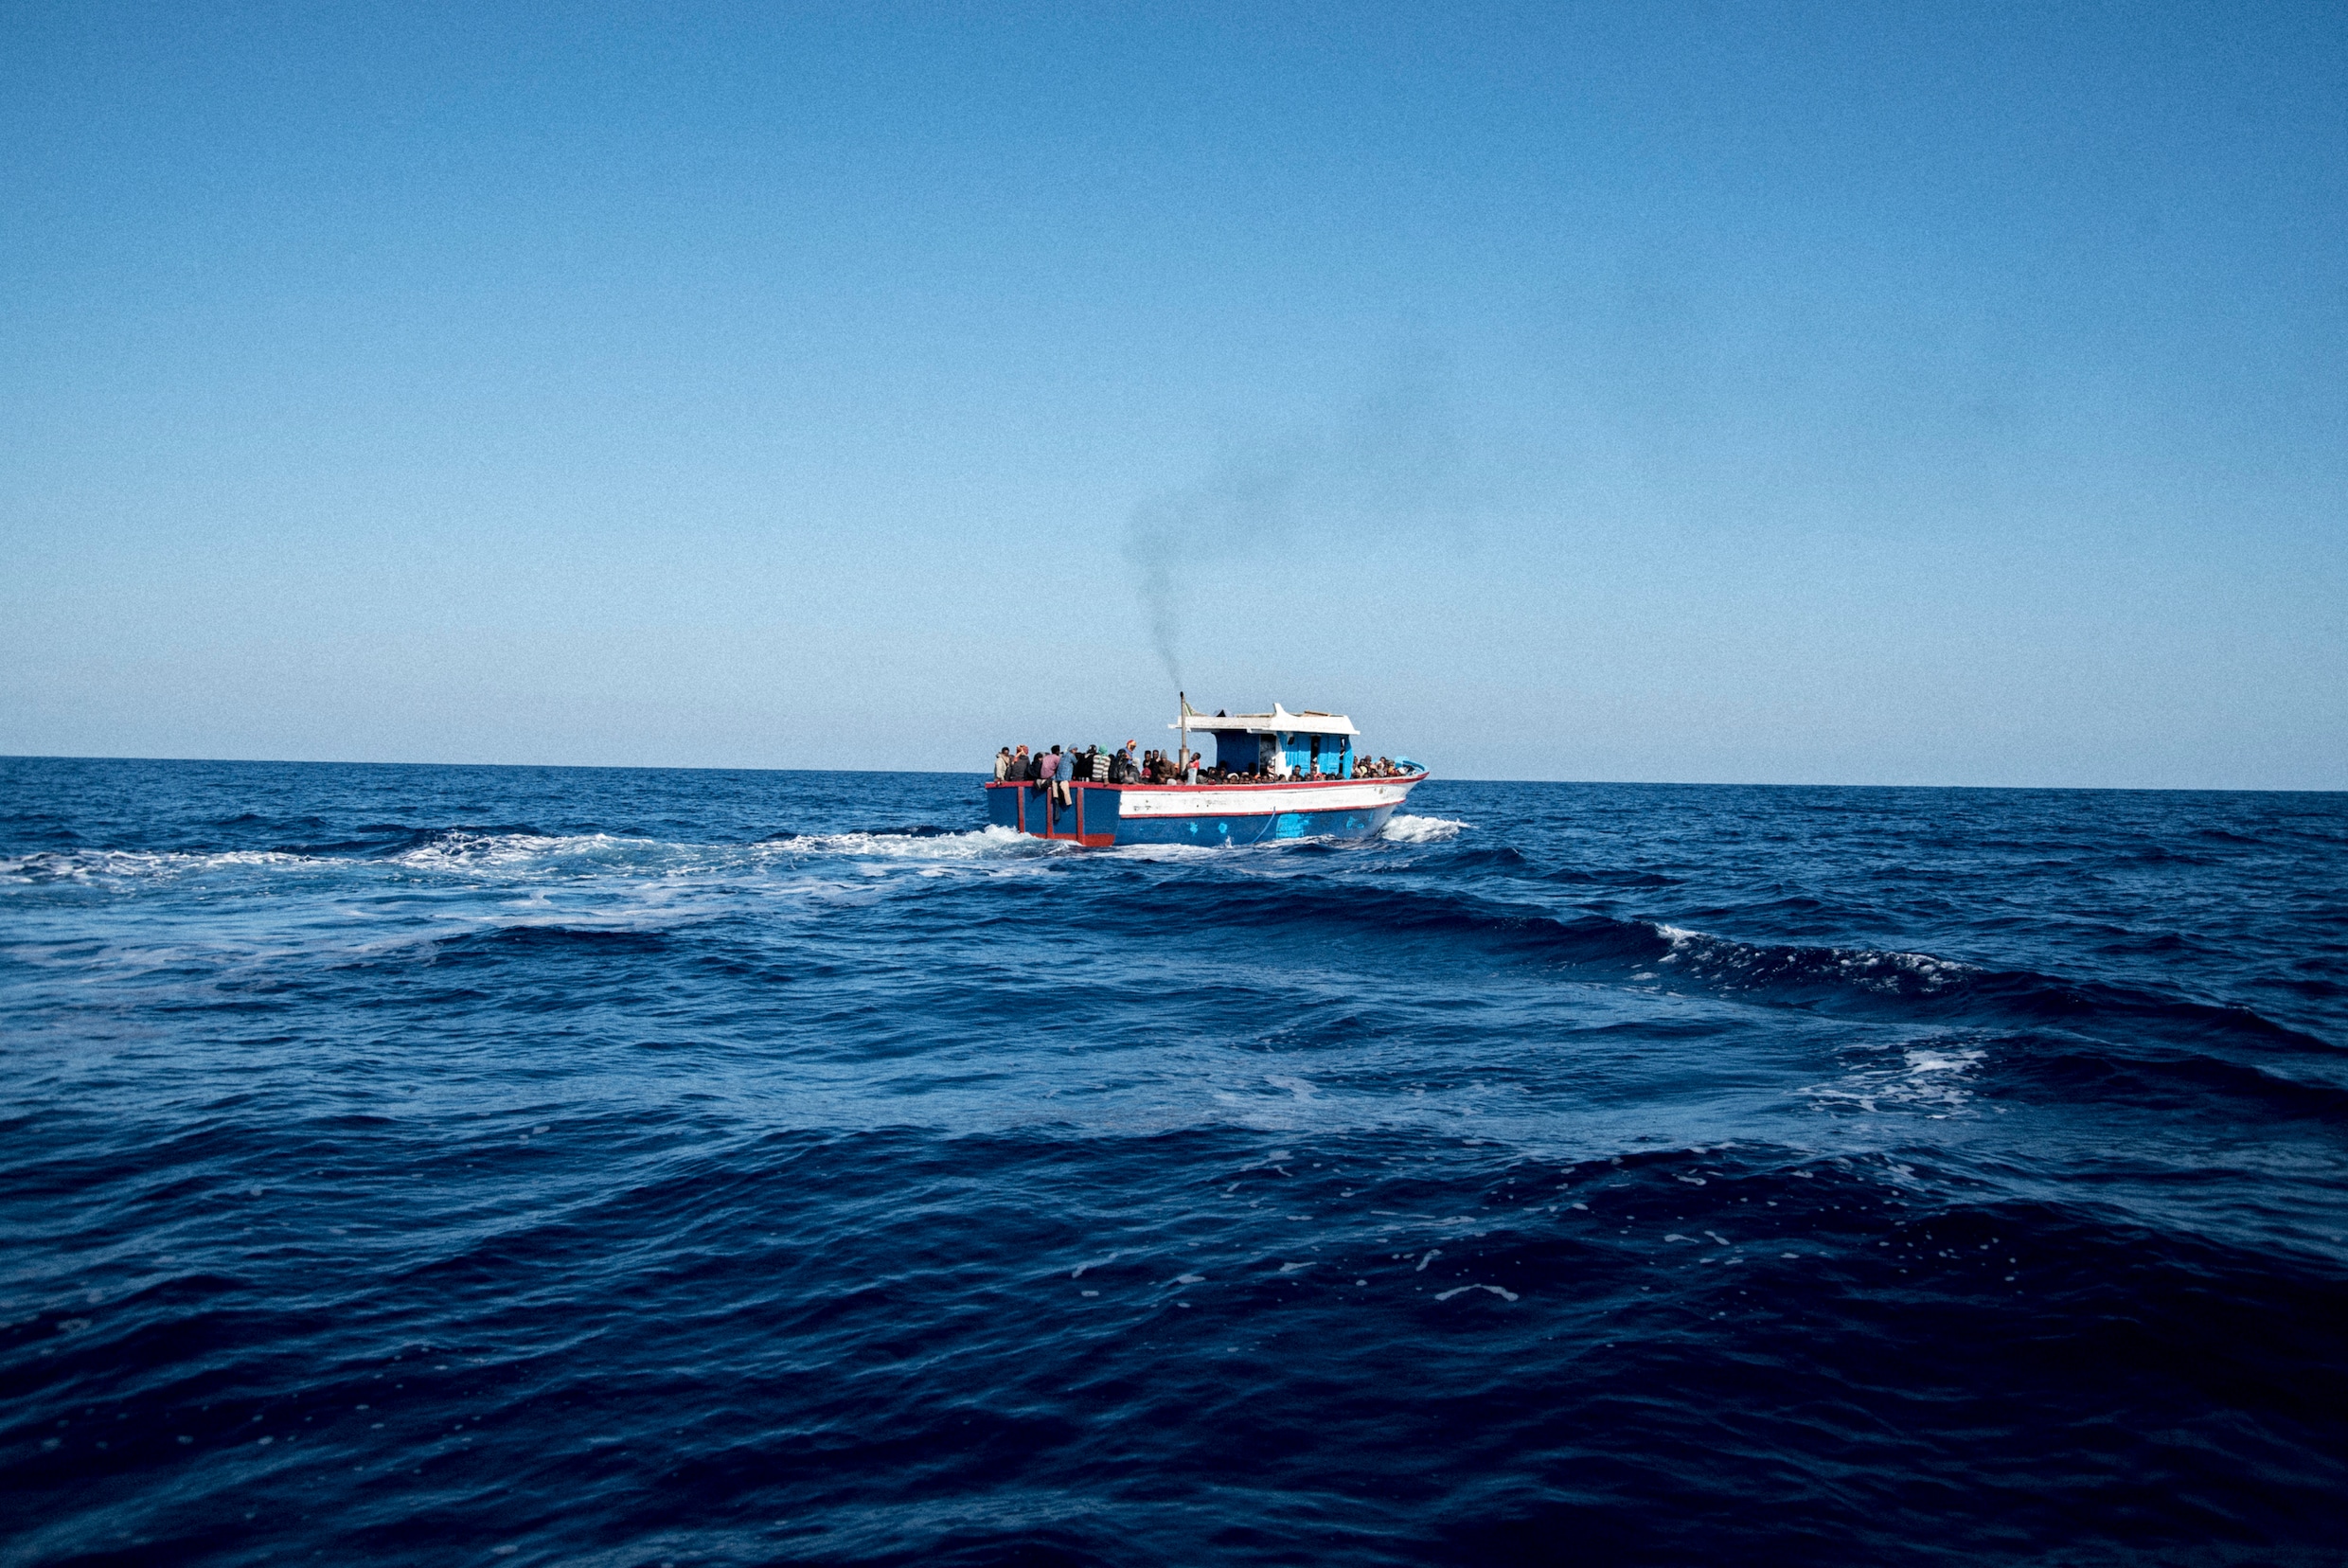 49 doden bij bootramp voor de kust van Jemen, 140 opvarenden nog vermist